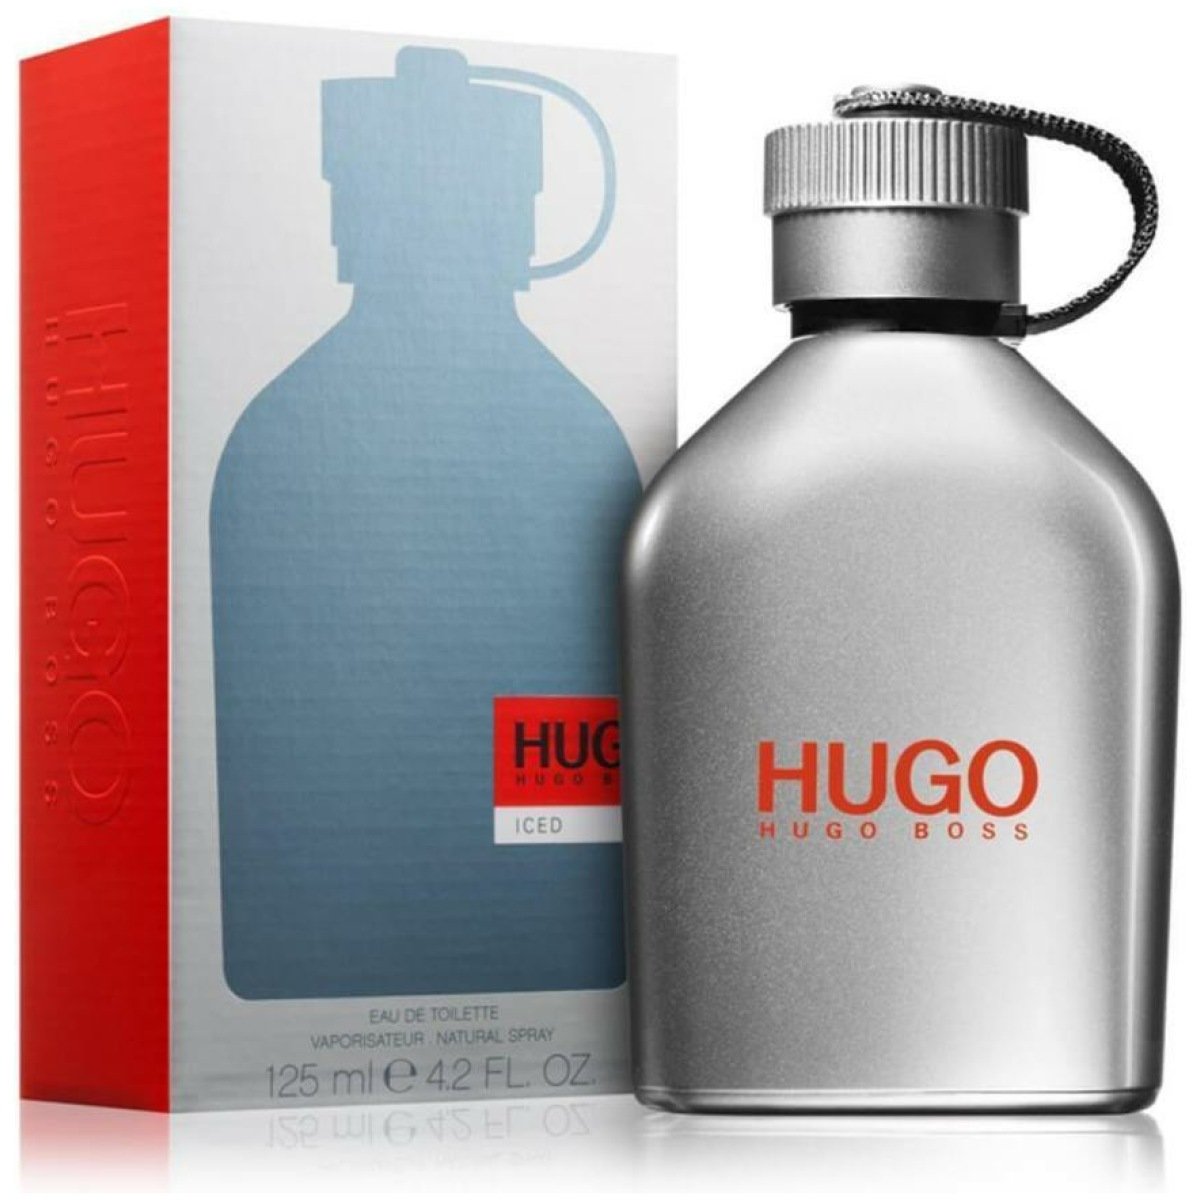 Hugo Boss Iced EDT Perfume For Men 125 ml